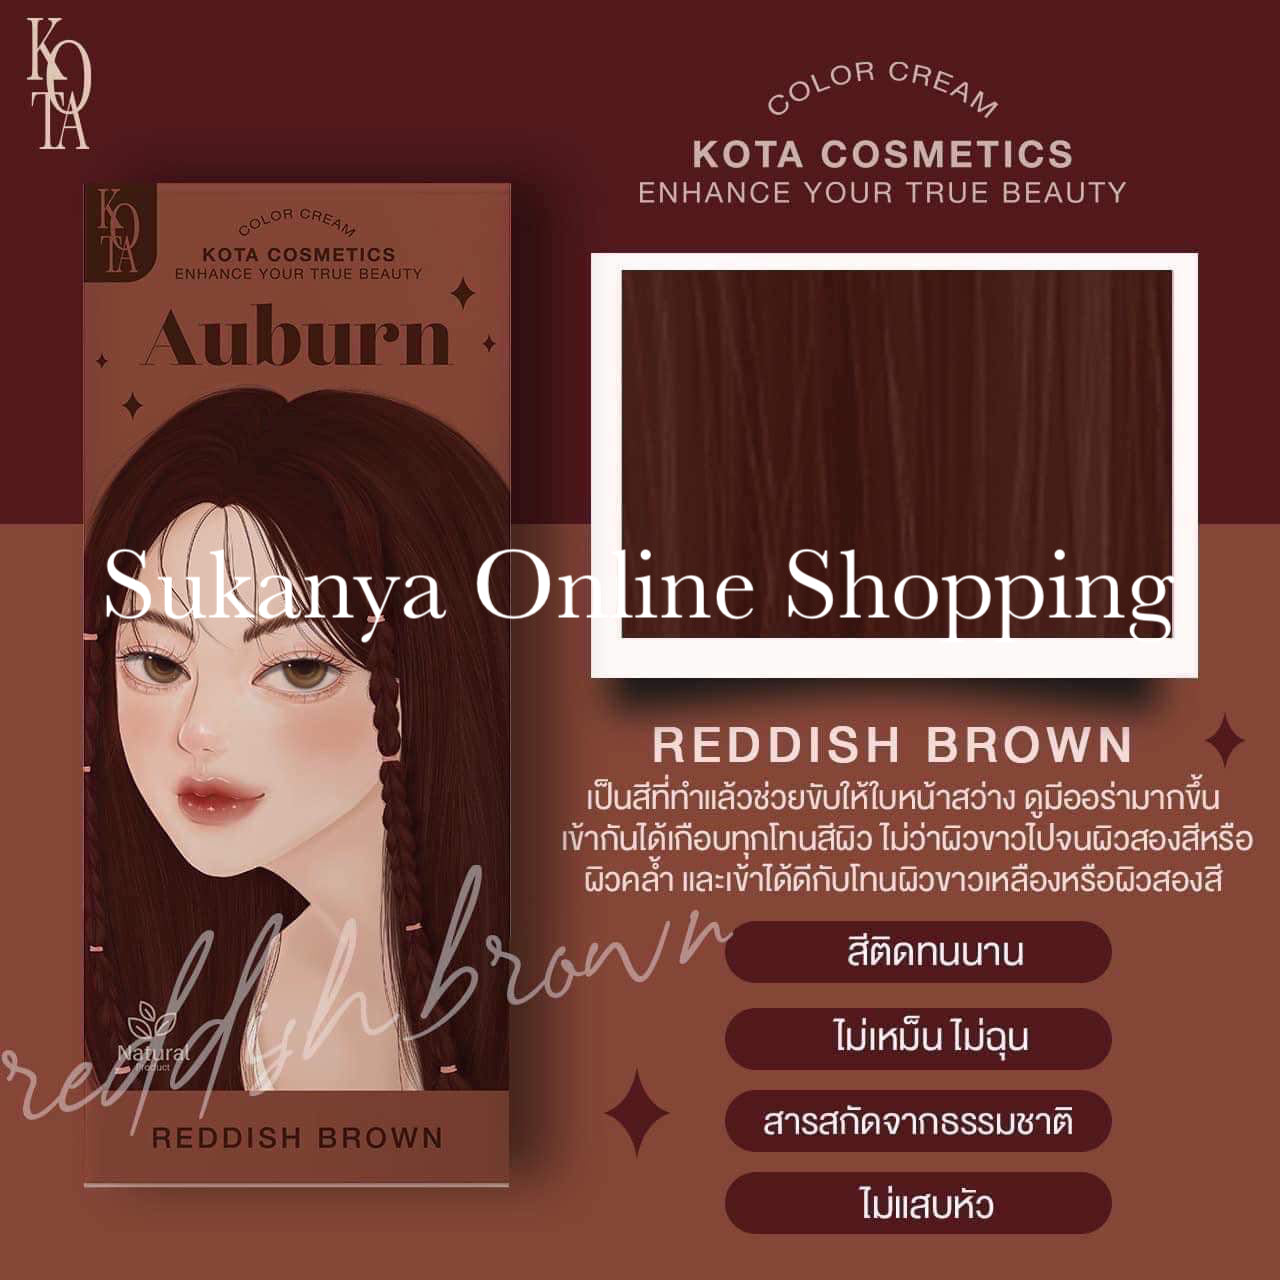 ยาย้อมผม -โคทา คอสเมติก คัลเลอร์ เออร์เบิร์น (เรดดิช บราวน์)-Kota Cosmetics Color Cream Auburn (Reddish Brown)